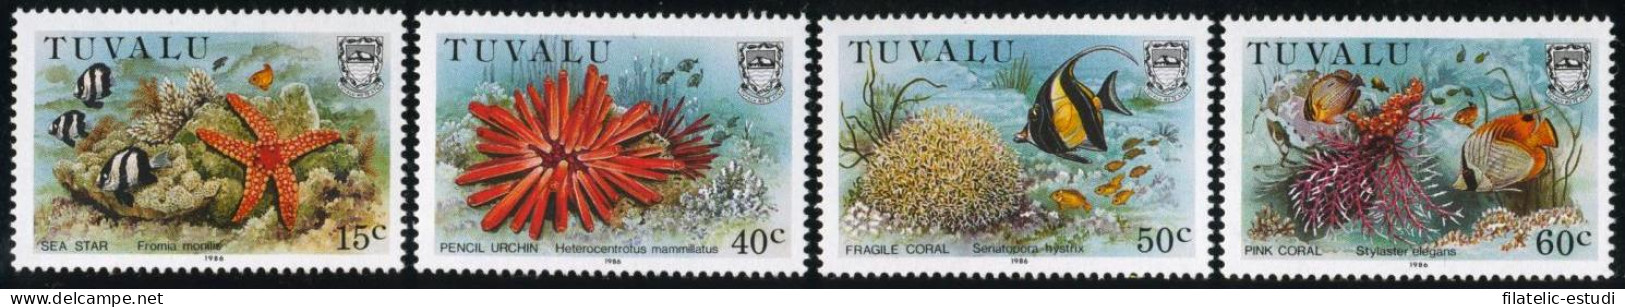 FAU2 Tuvalu 400/03  1986   MNH - Tuvalu